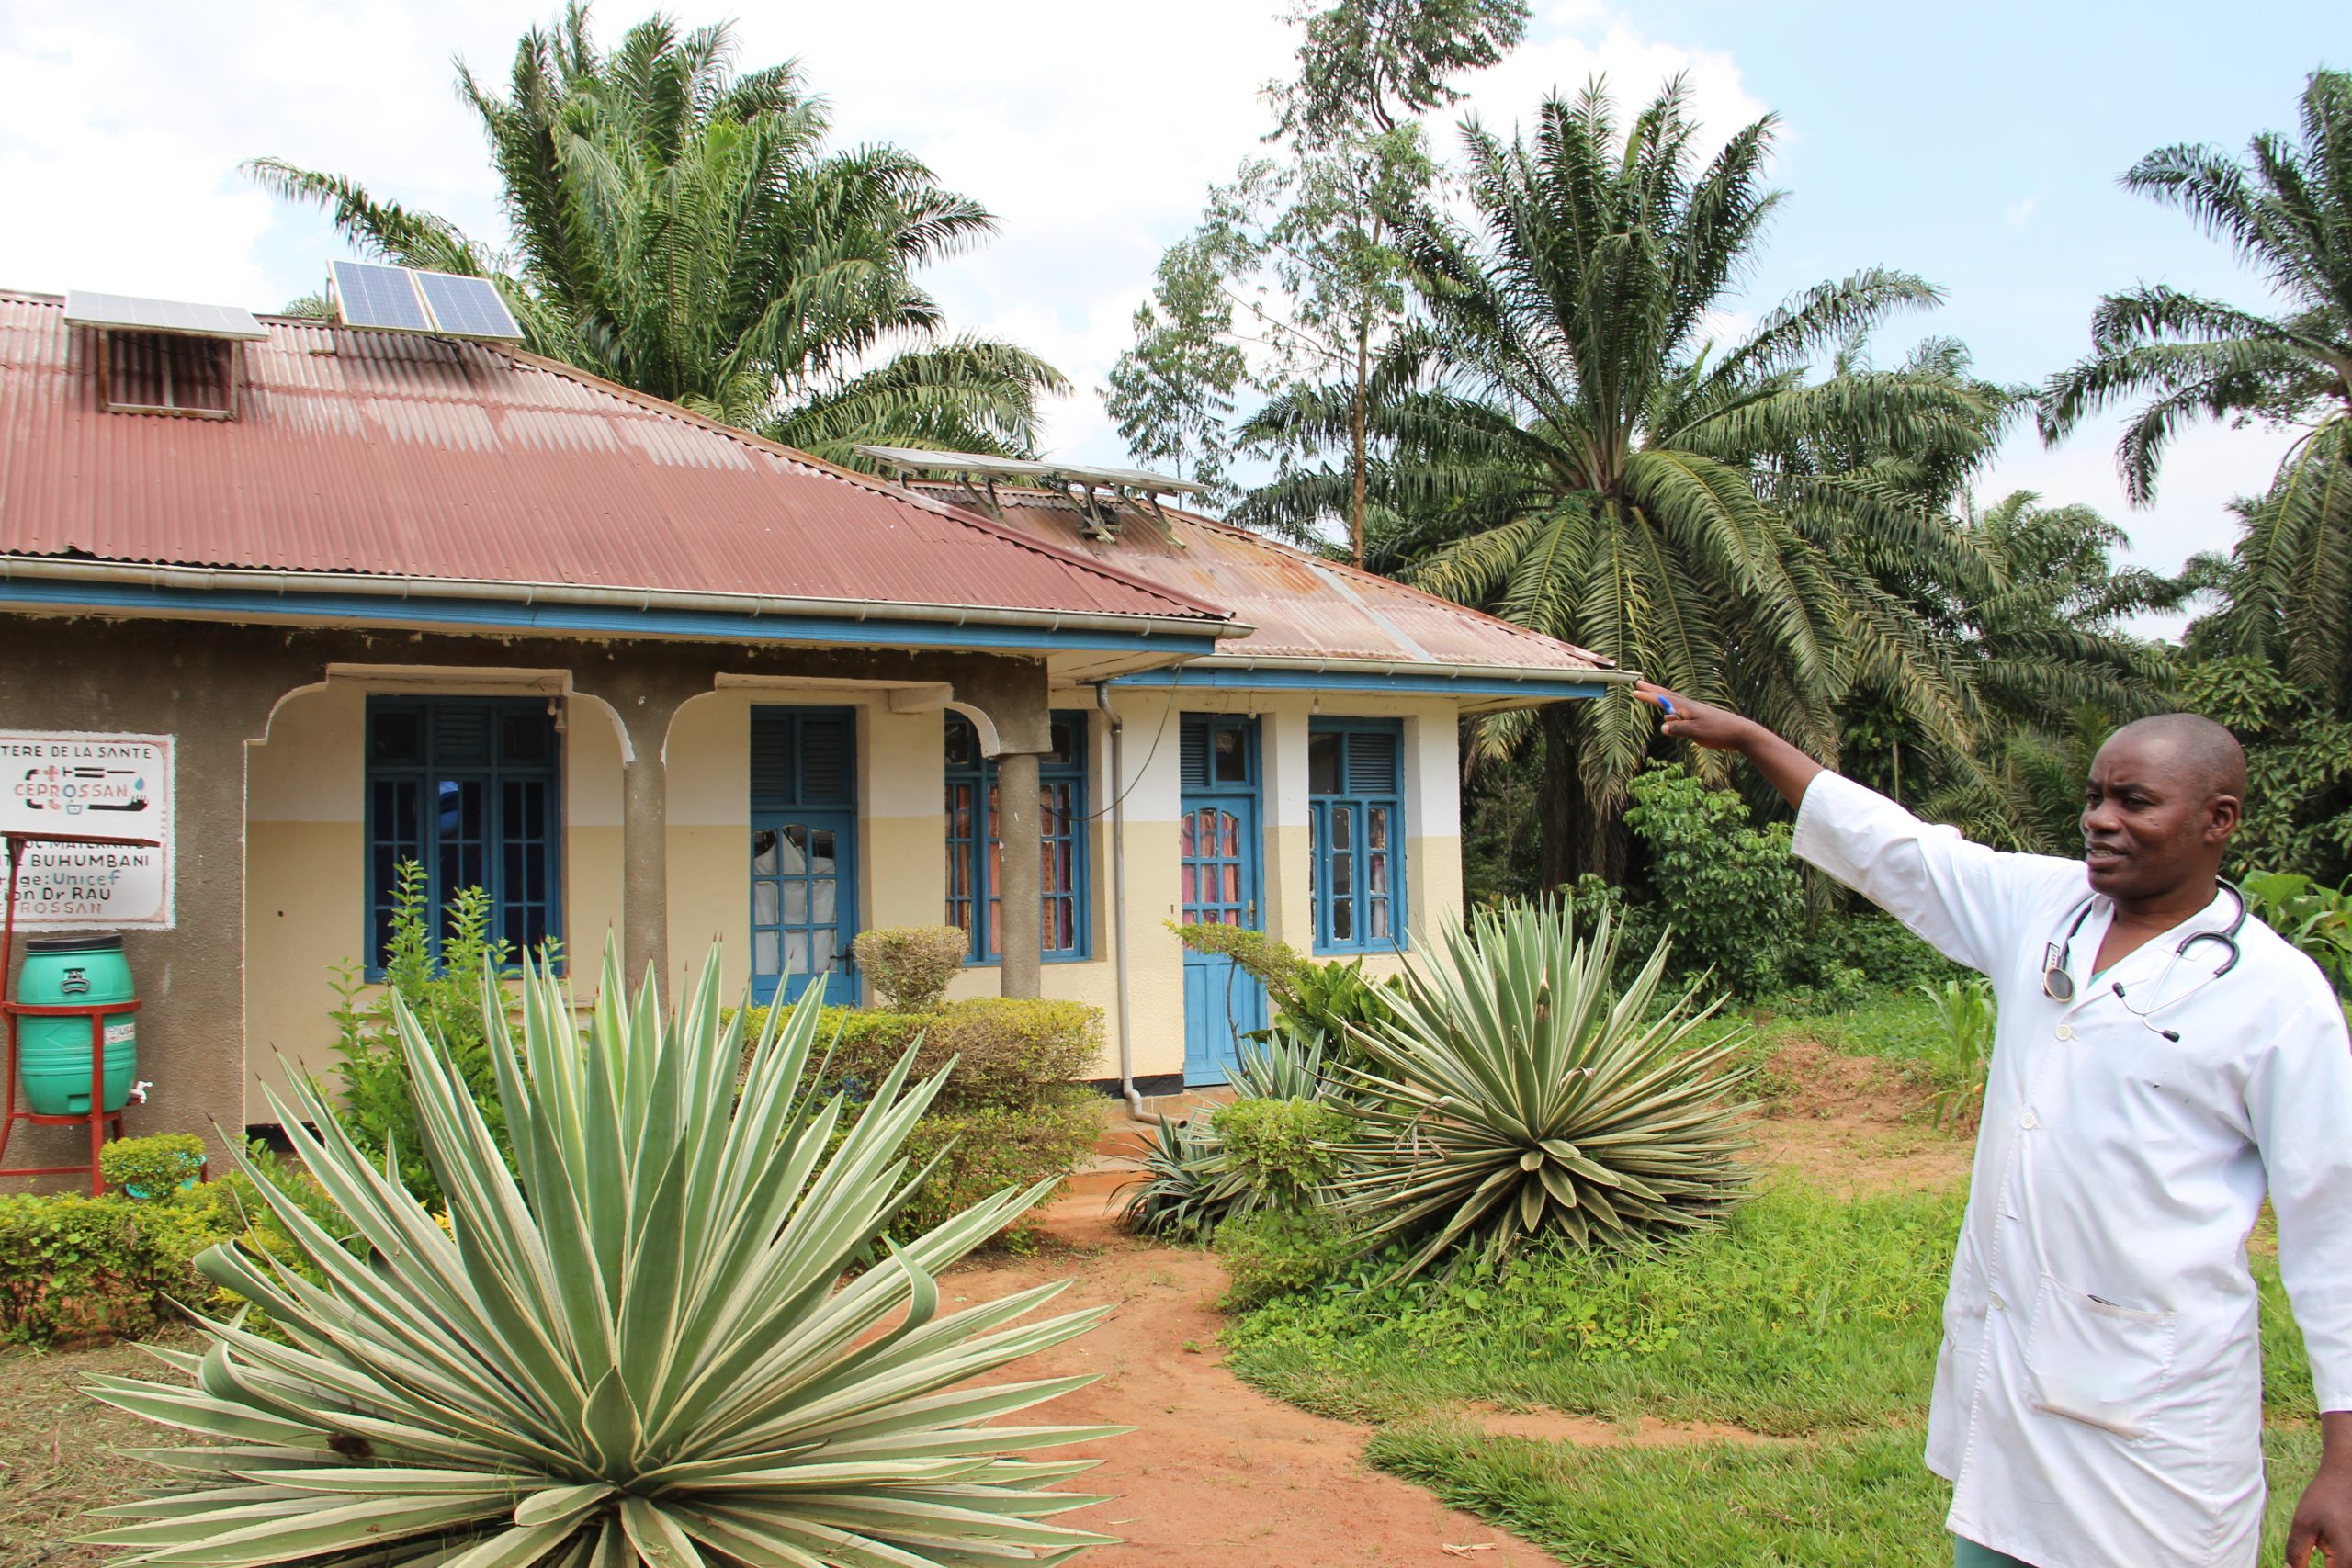 يشير بنجامين ماتومو مبوسا، كبير الممرضين في مرفق بوهومباني الصحي في منطقة مابالاكو الصحية في جمهورية الكونغو الديمقراطية، إلى وجود الطاقة الشمسية وفوائدها لأفراد المجتمع. 